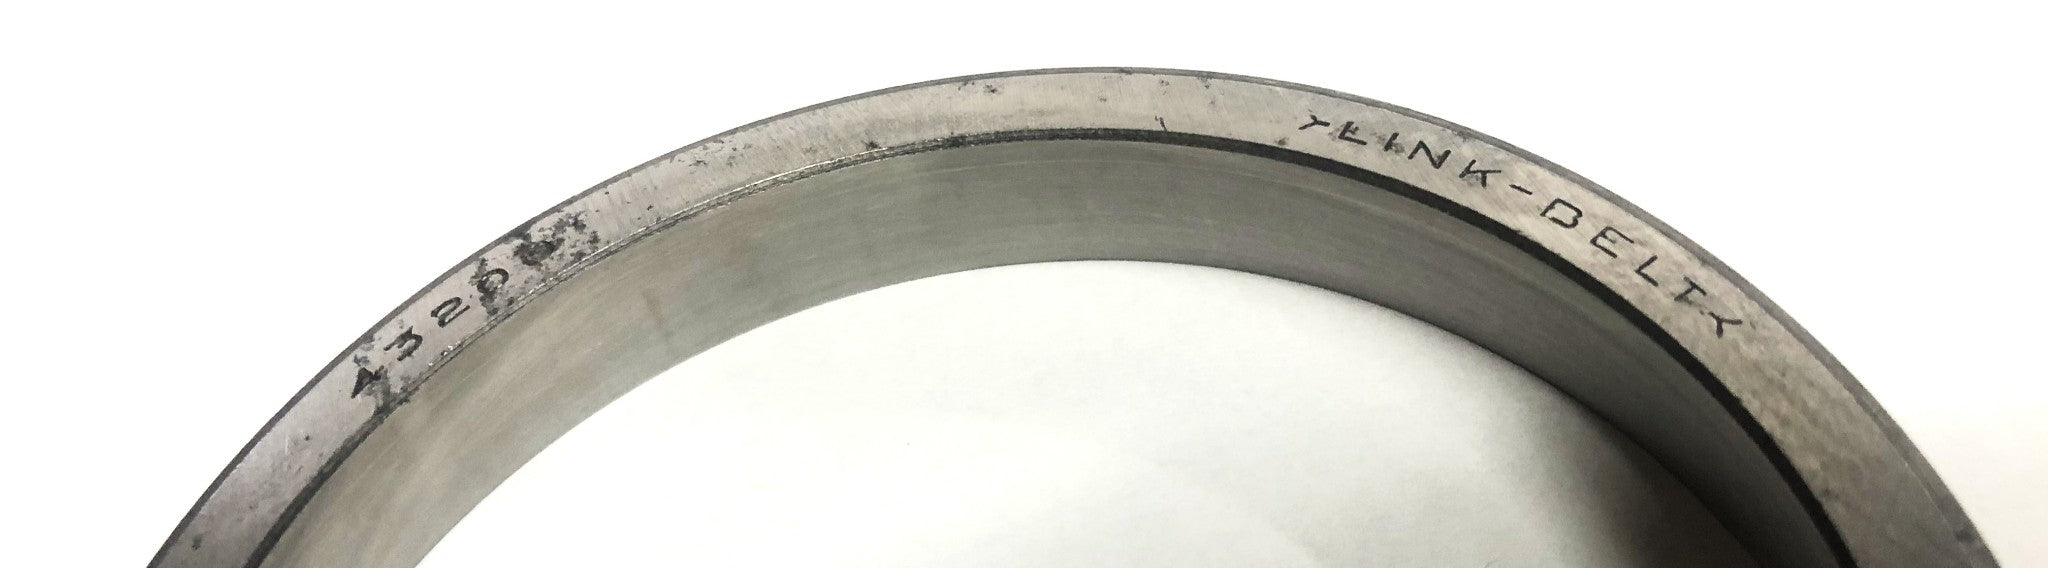 Link-Belt Tapered Roller Bearing Cup 43200 NOS